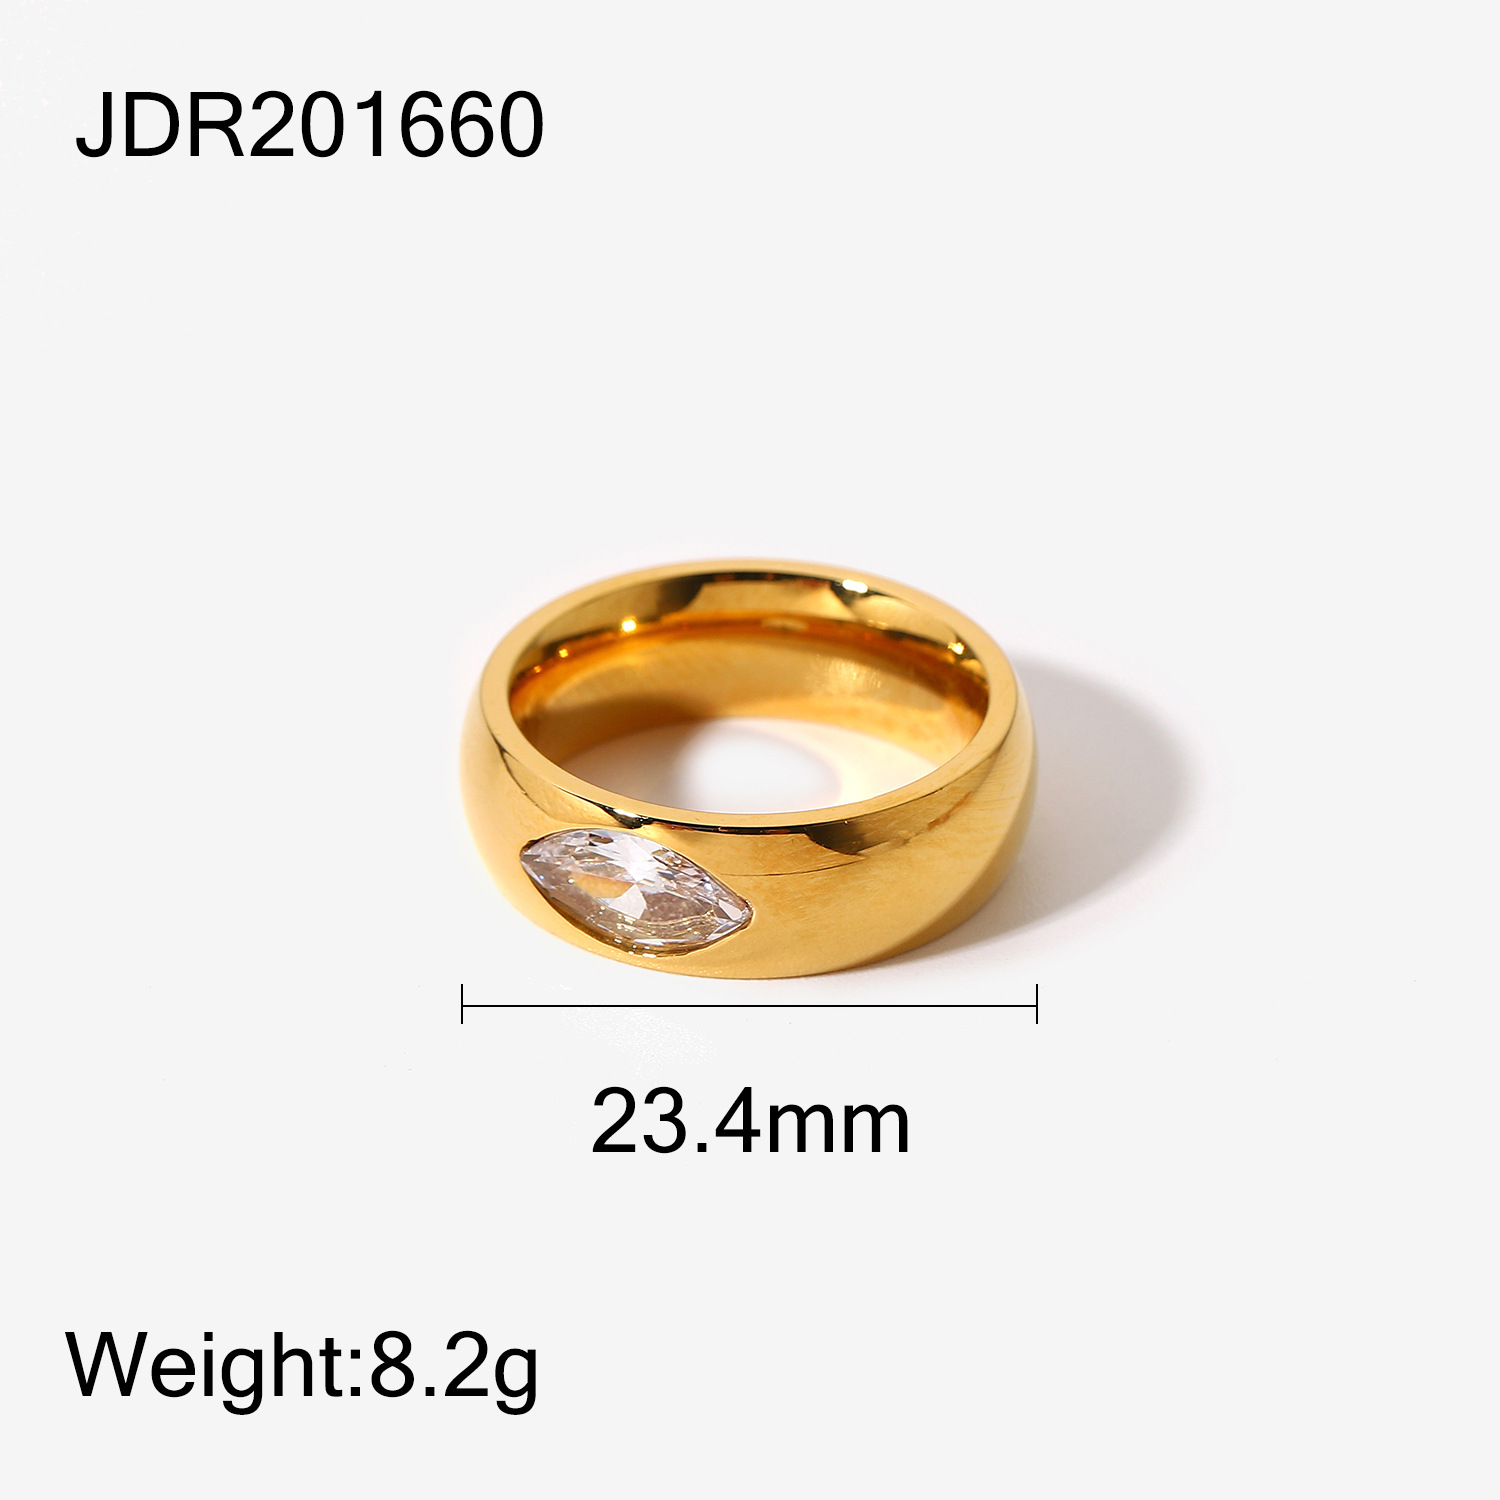 JDR201660